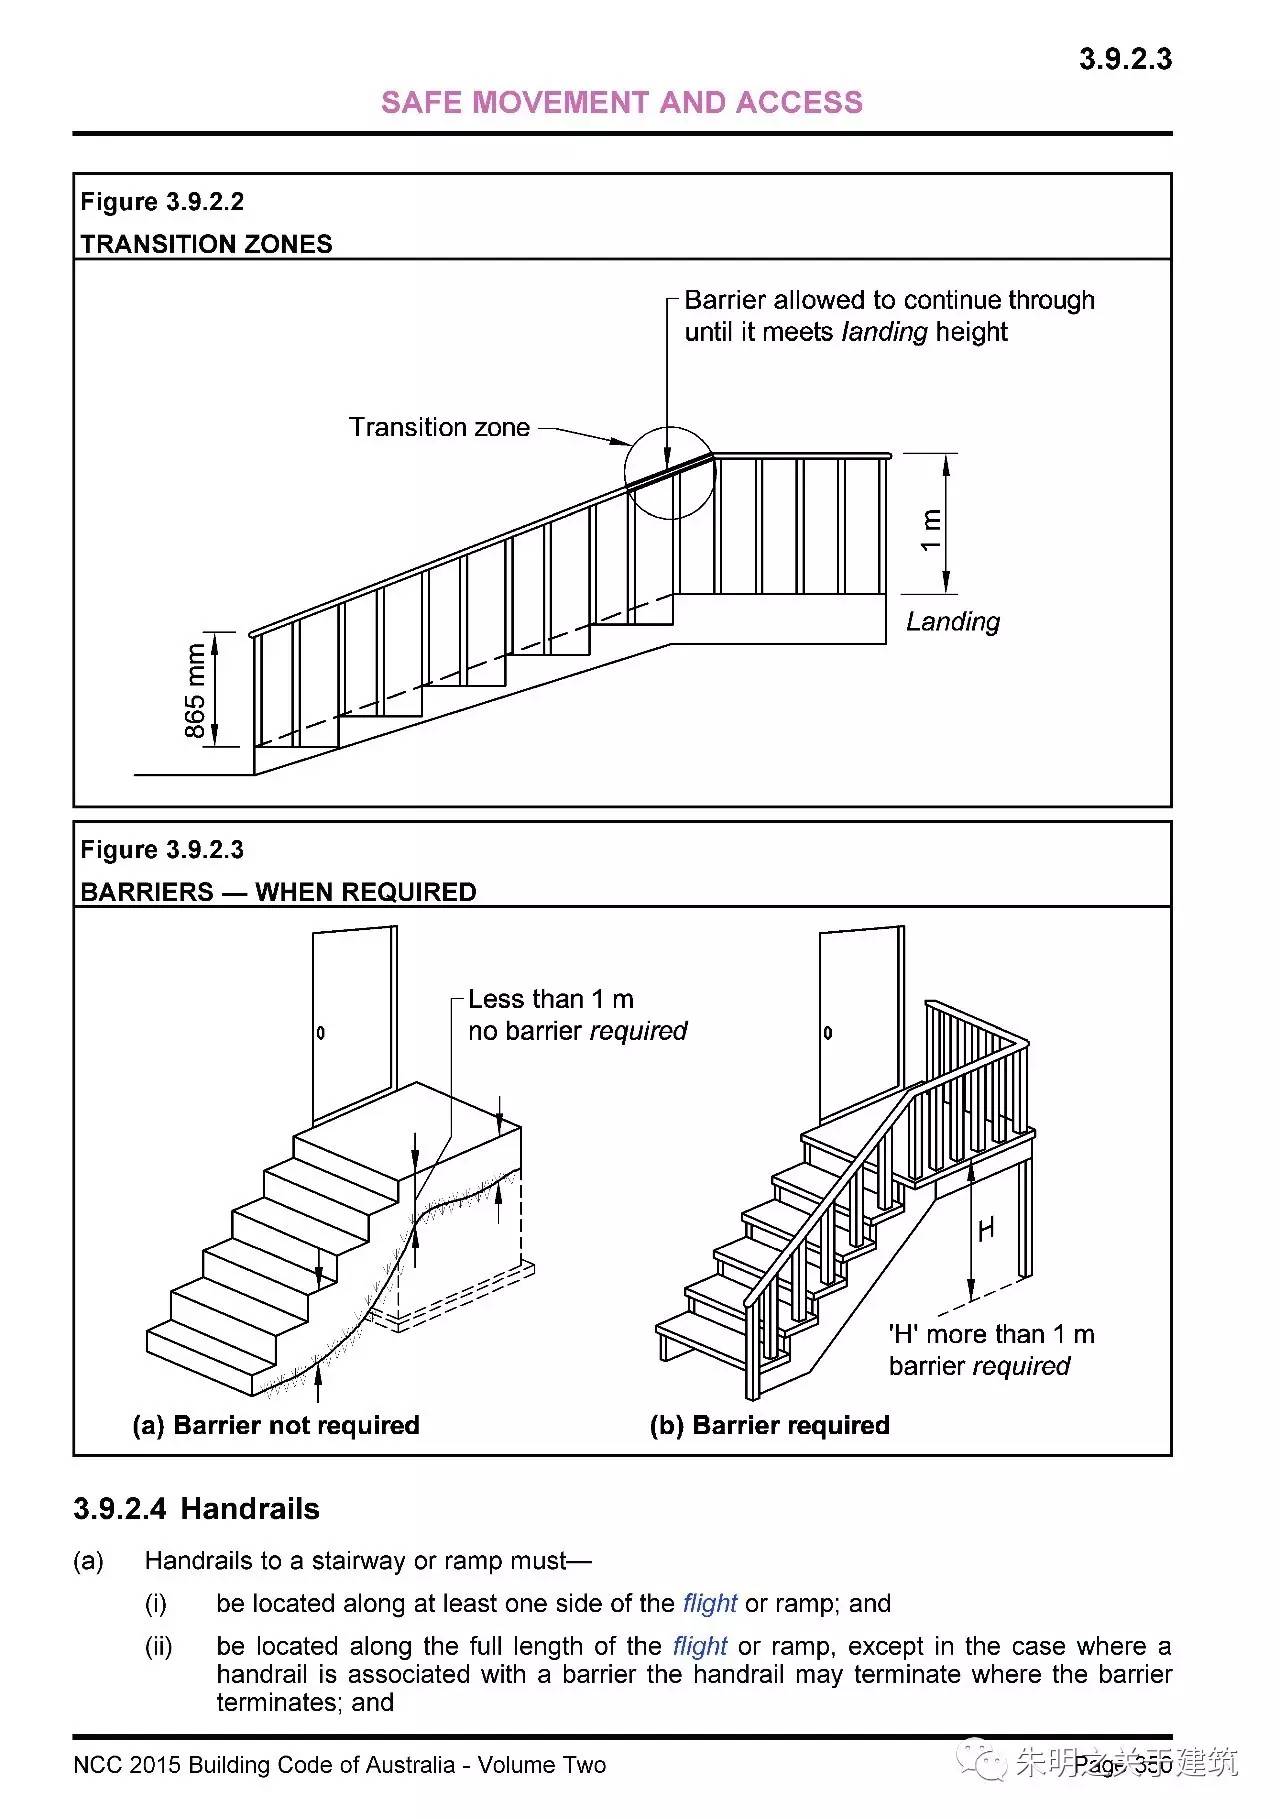 楼梯水平段栏杆图解图片